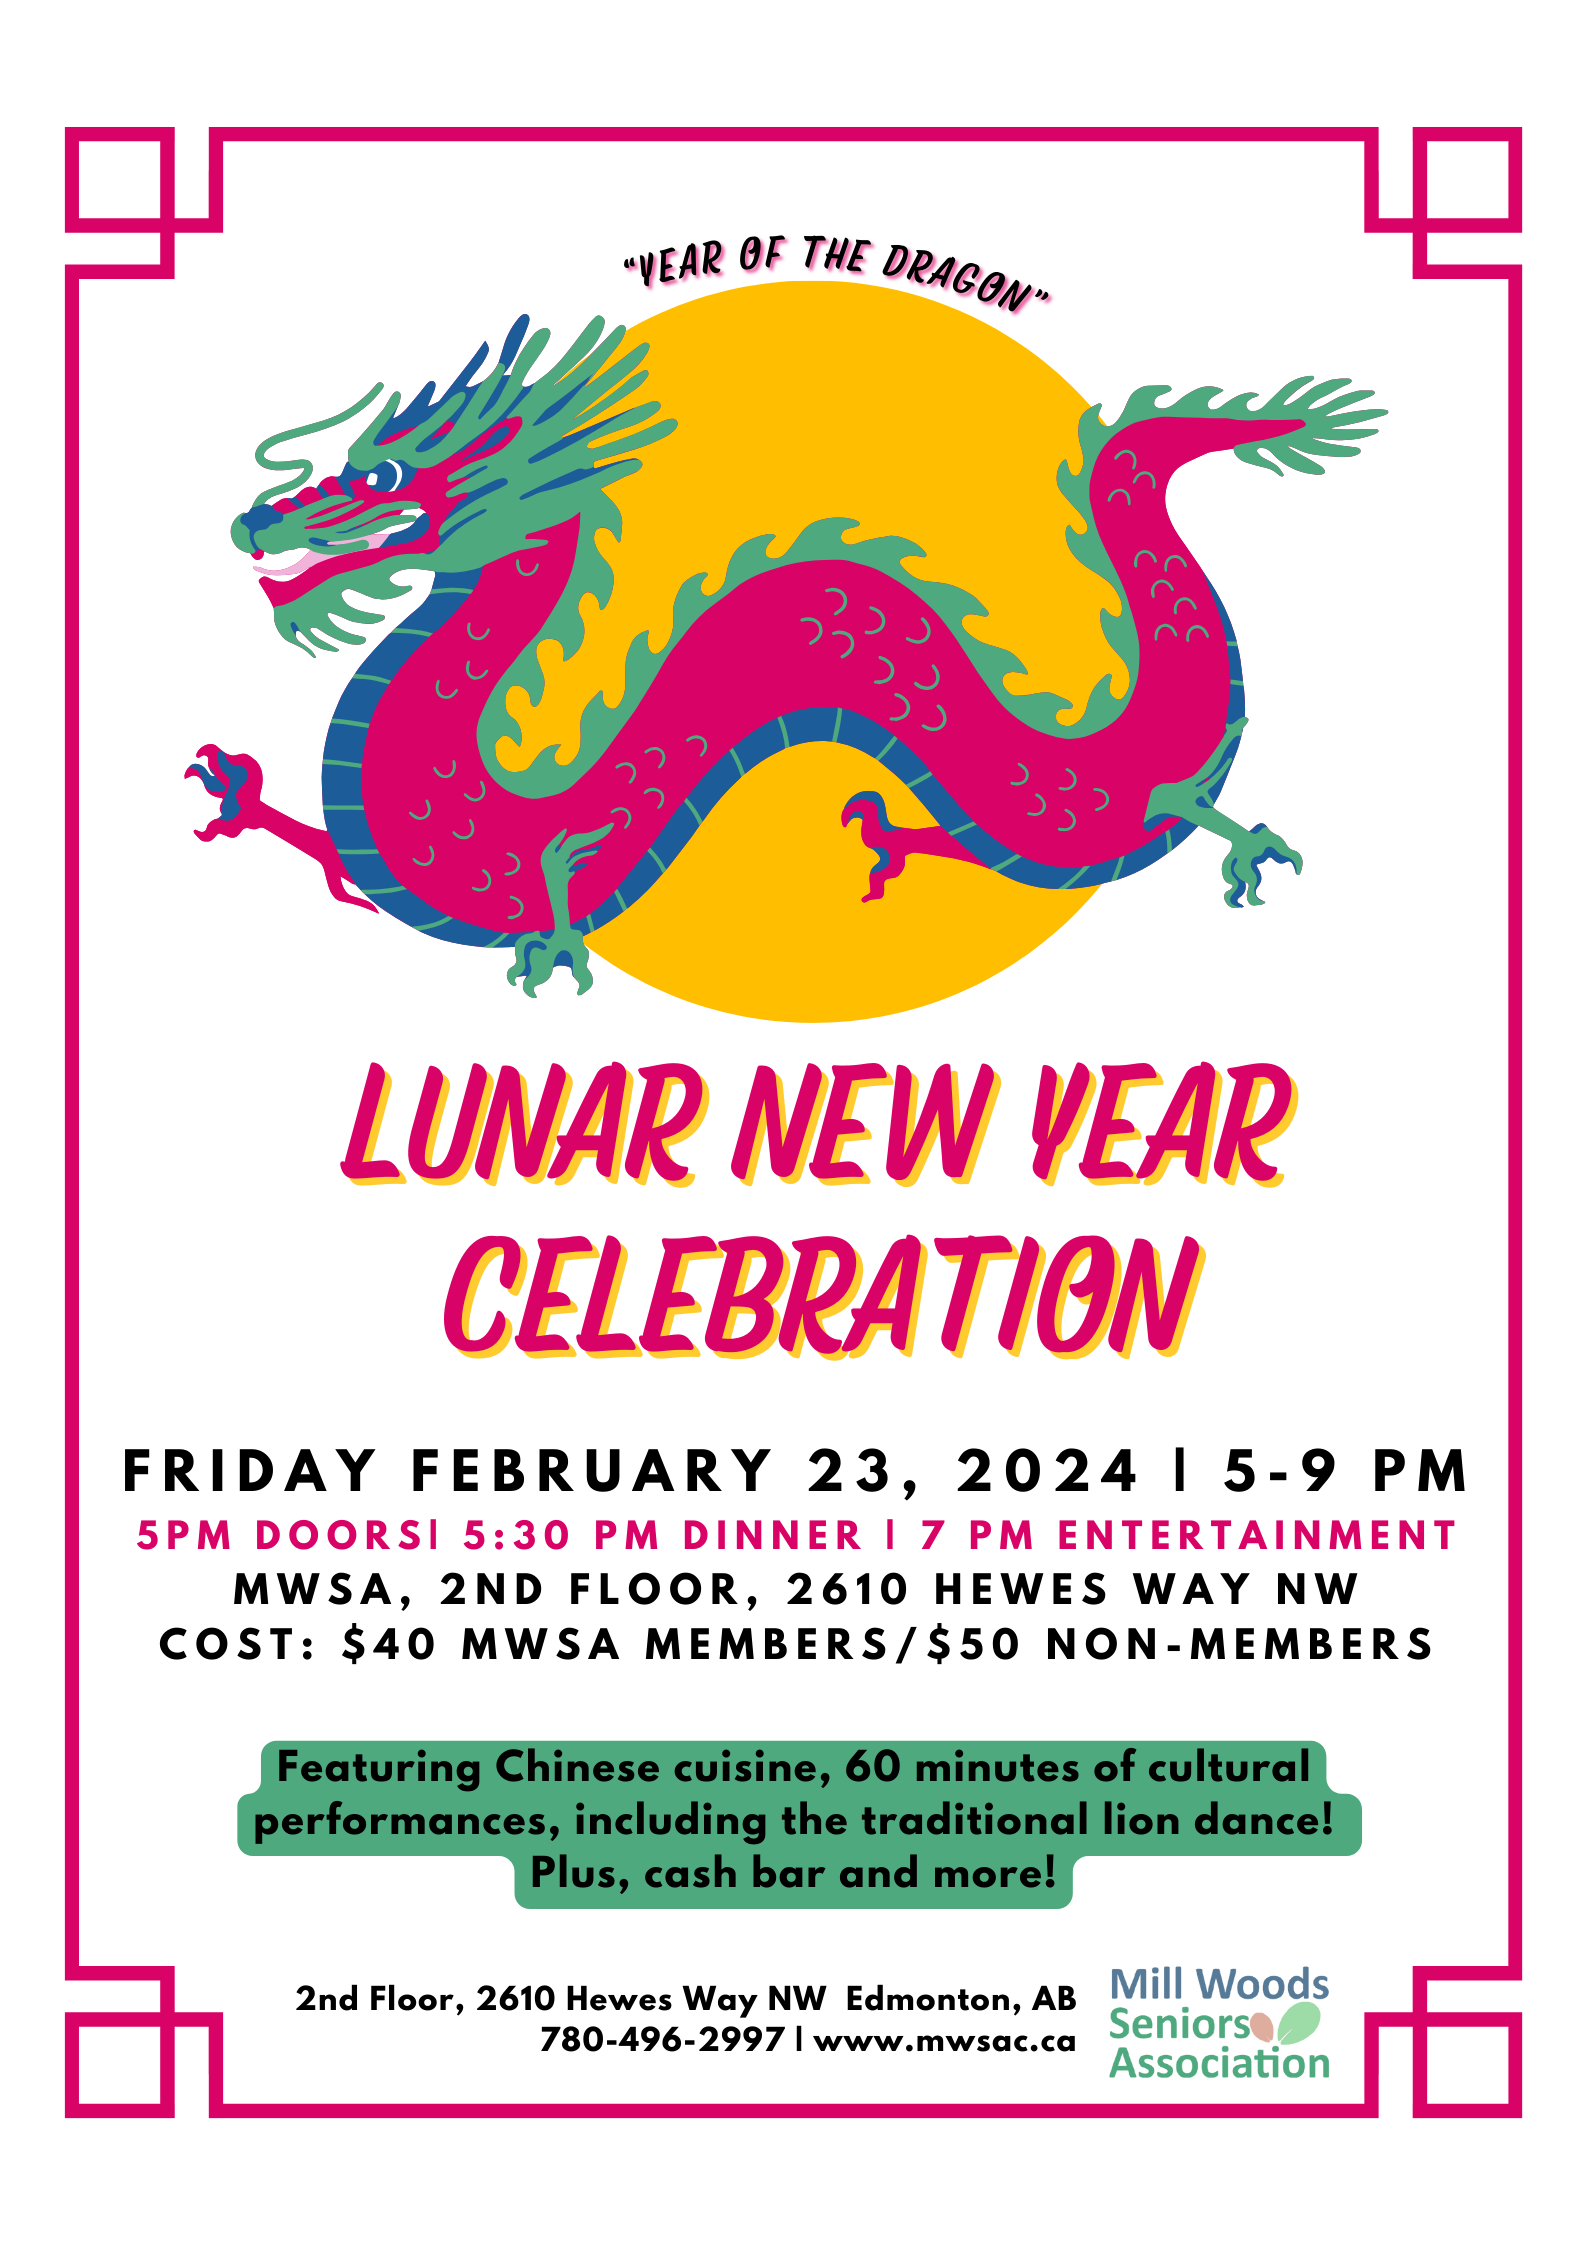 mwsa lunar new year 2024 celebration